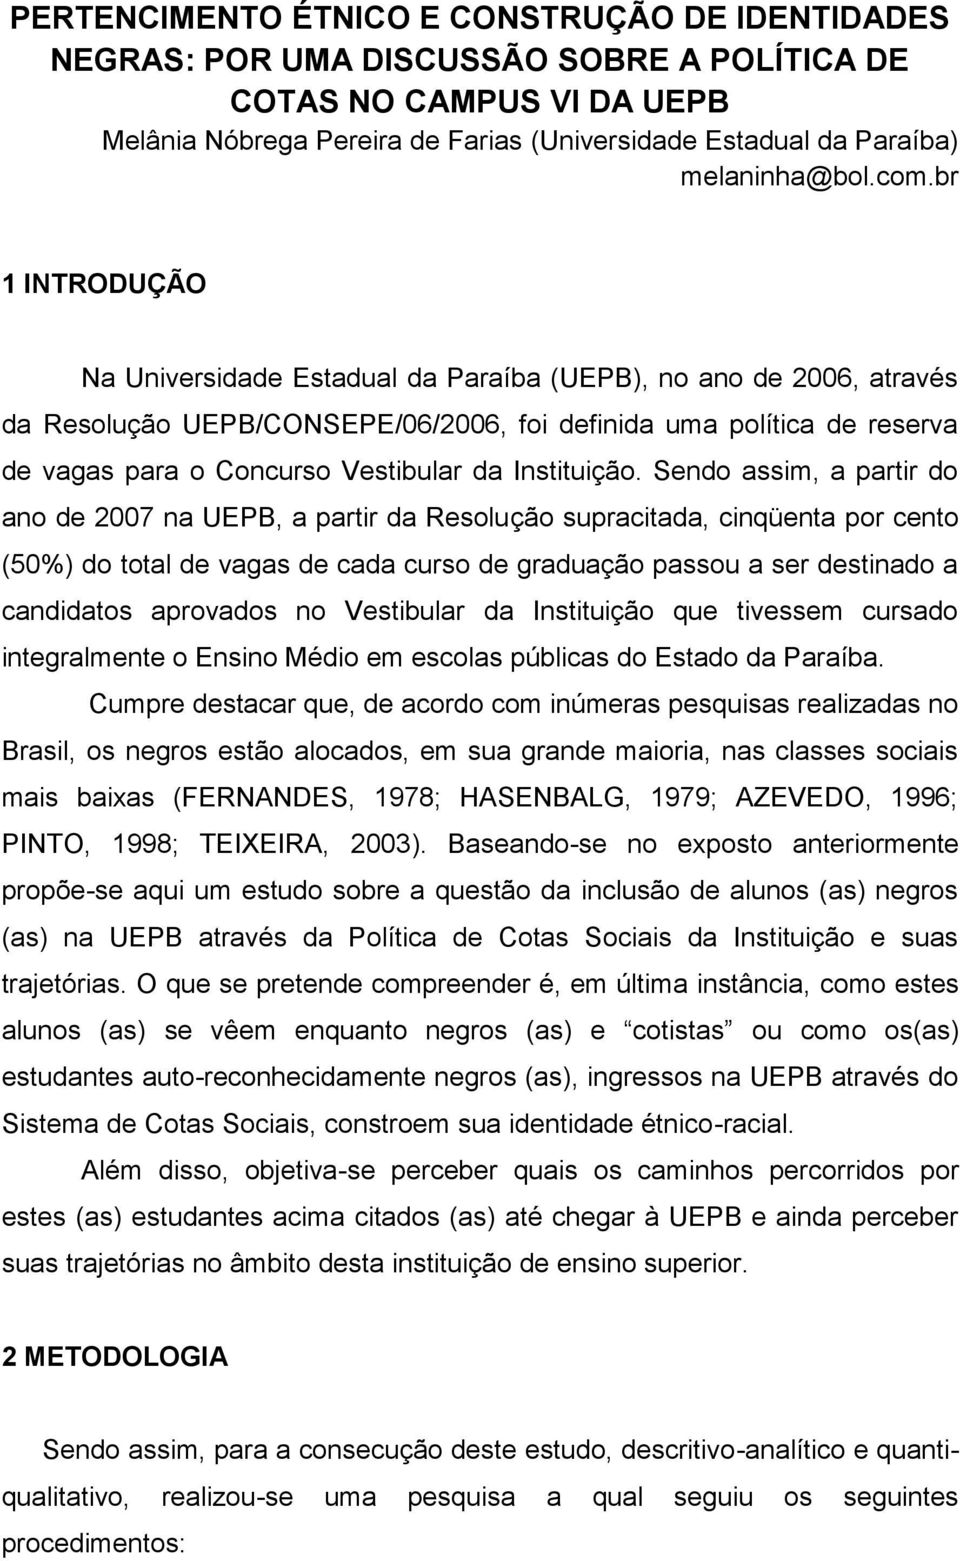 br 1 INTRODUÇÃO Na Universidade Estadual da Paraíba (UEPB), no ano de 2006, através da Resolução UEPB/CONSEPE/06/2006, foi definida uma política de reserva de vagas para o Concurso Vestibular da